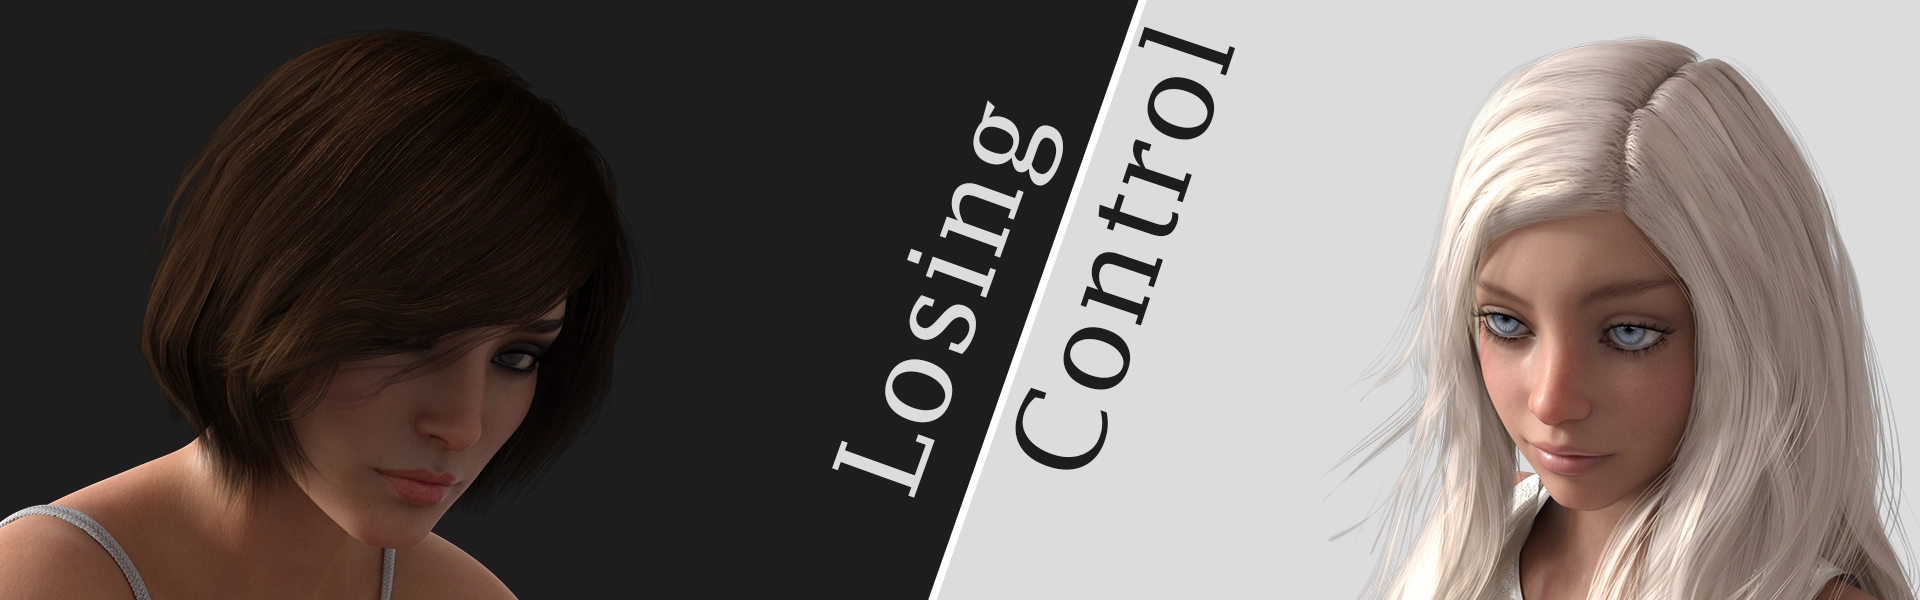 Losing Control [v0.1] main image